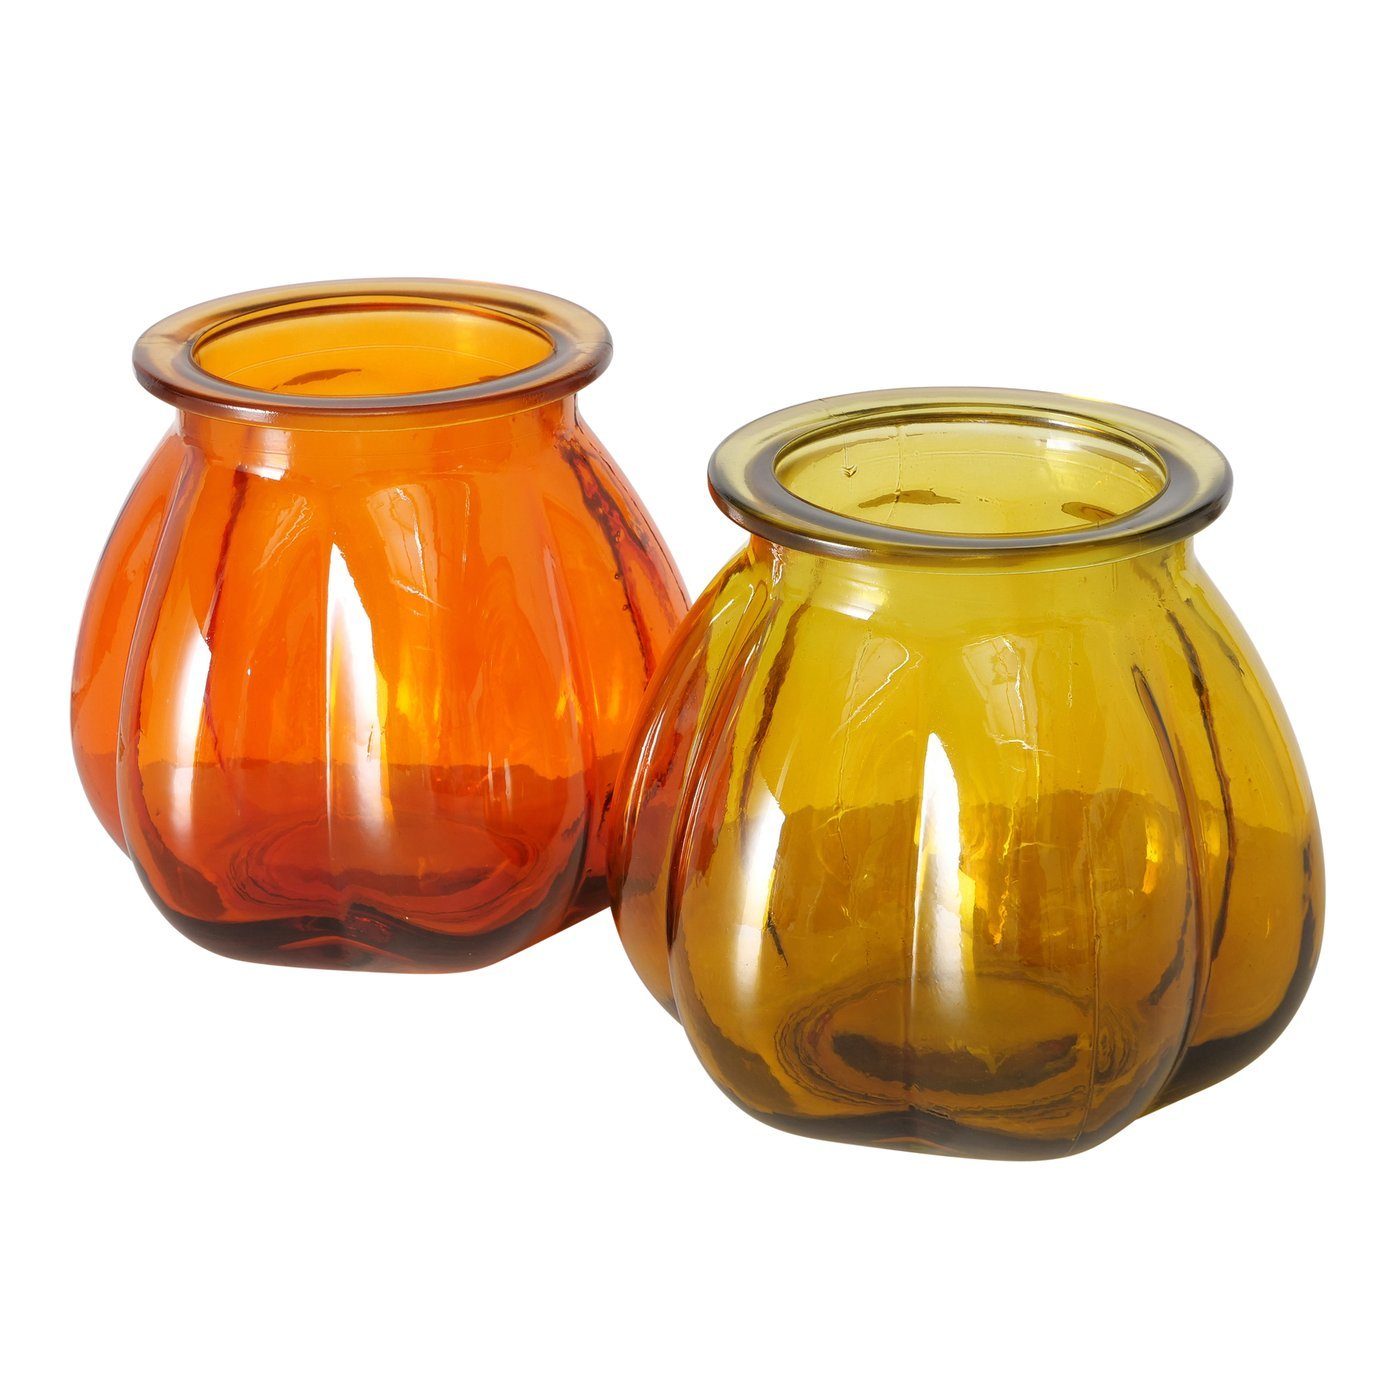 BOLTZE Dekovase Set "Tangerine" 2er in Blumenvase Vase Glas gelb/orange, aus